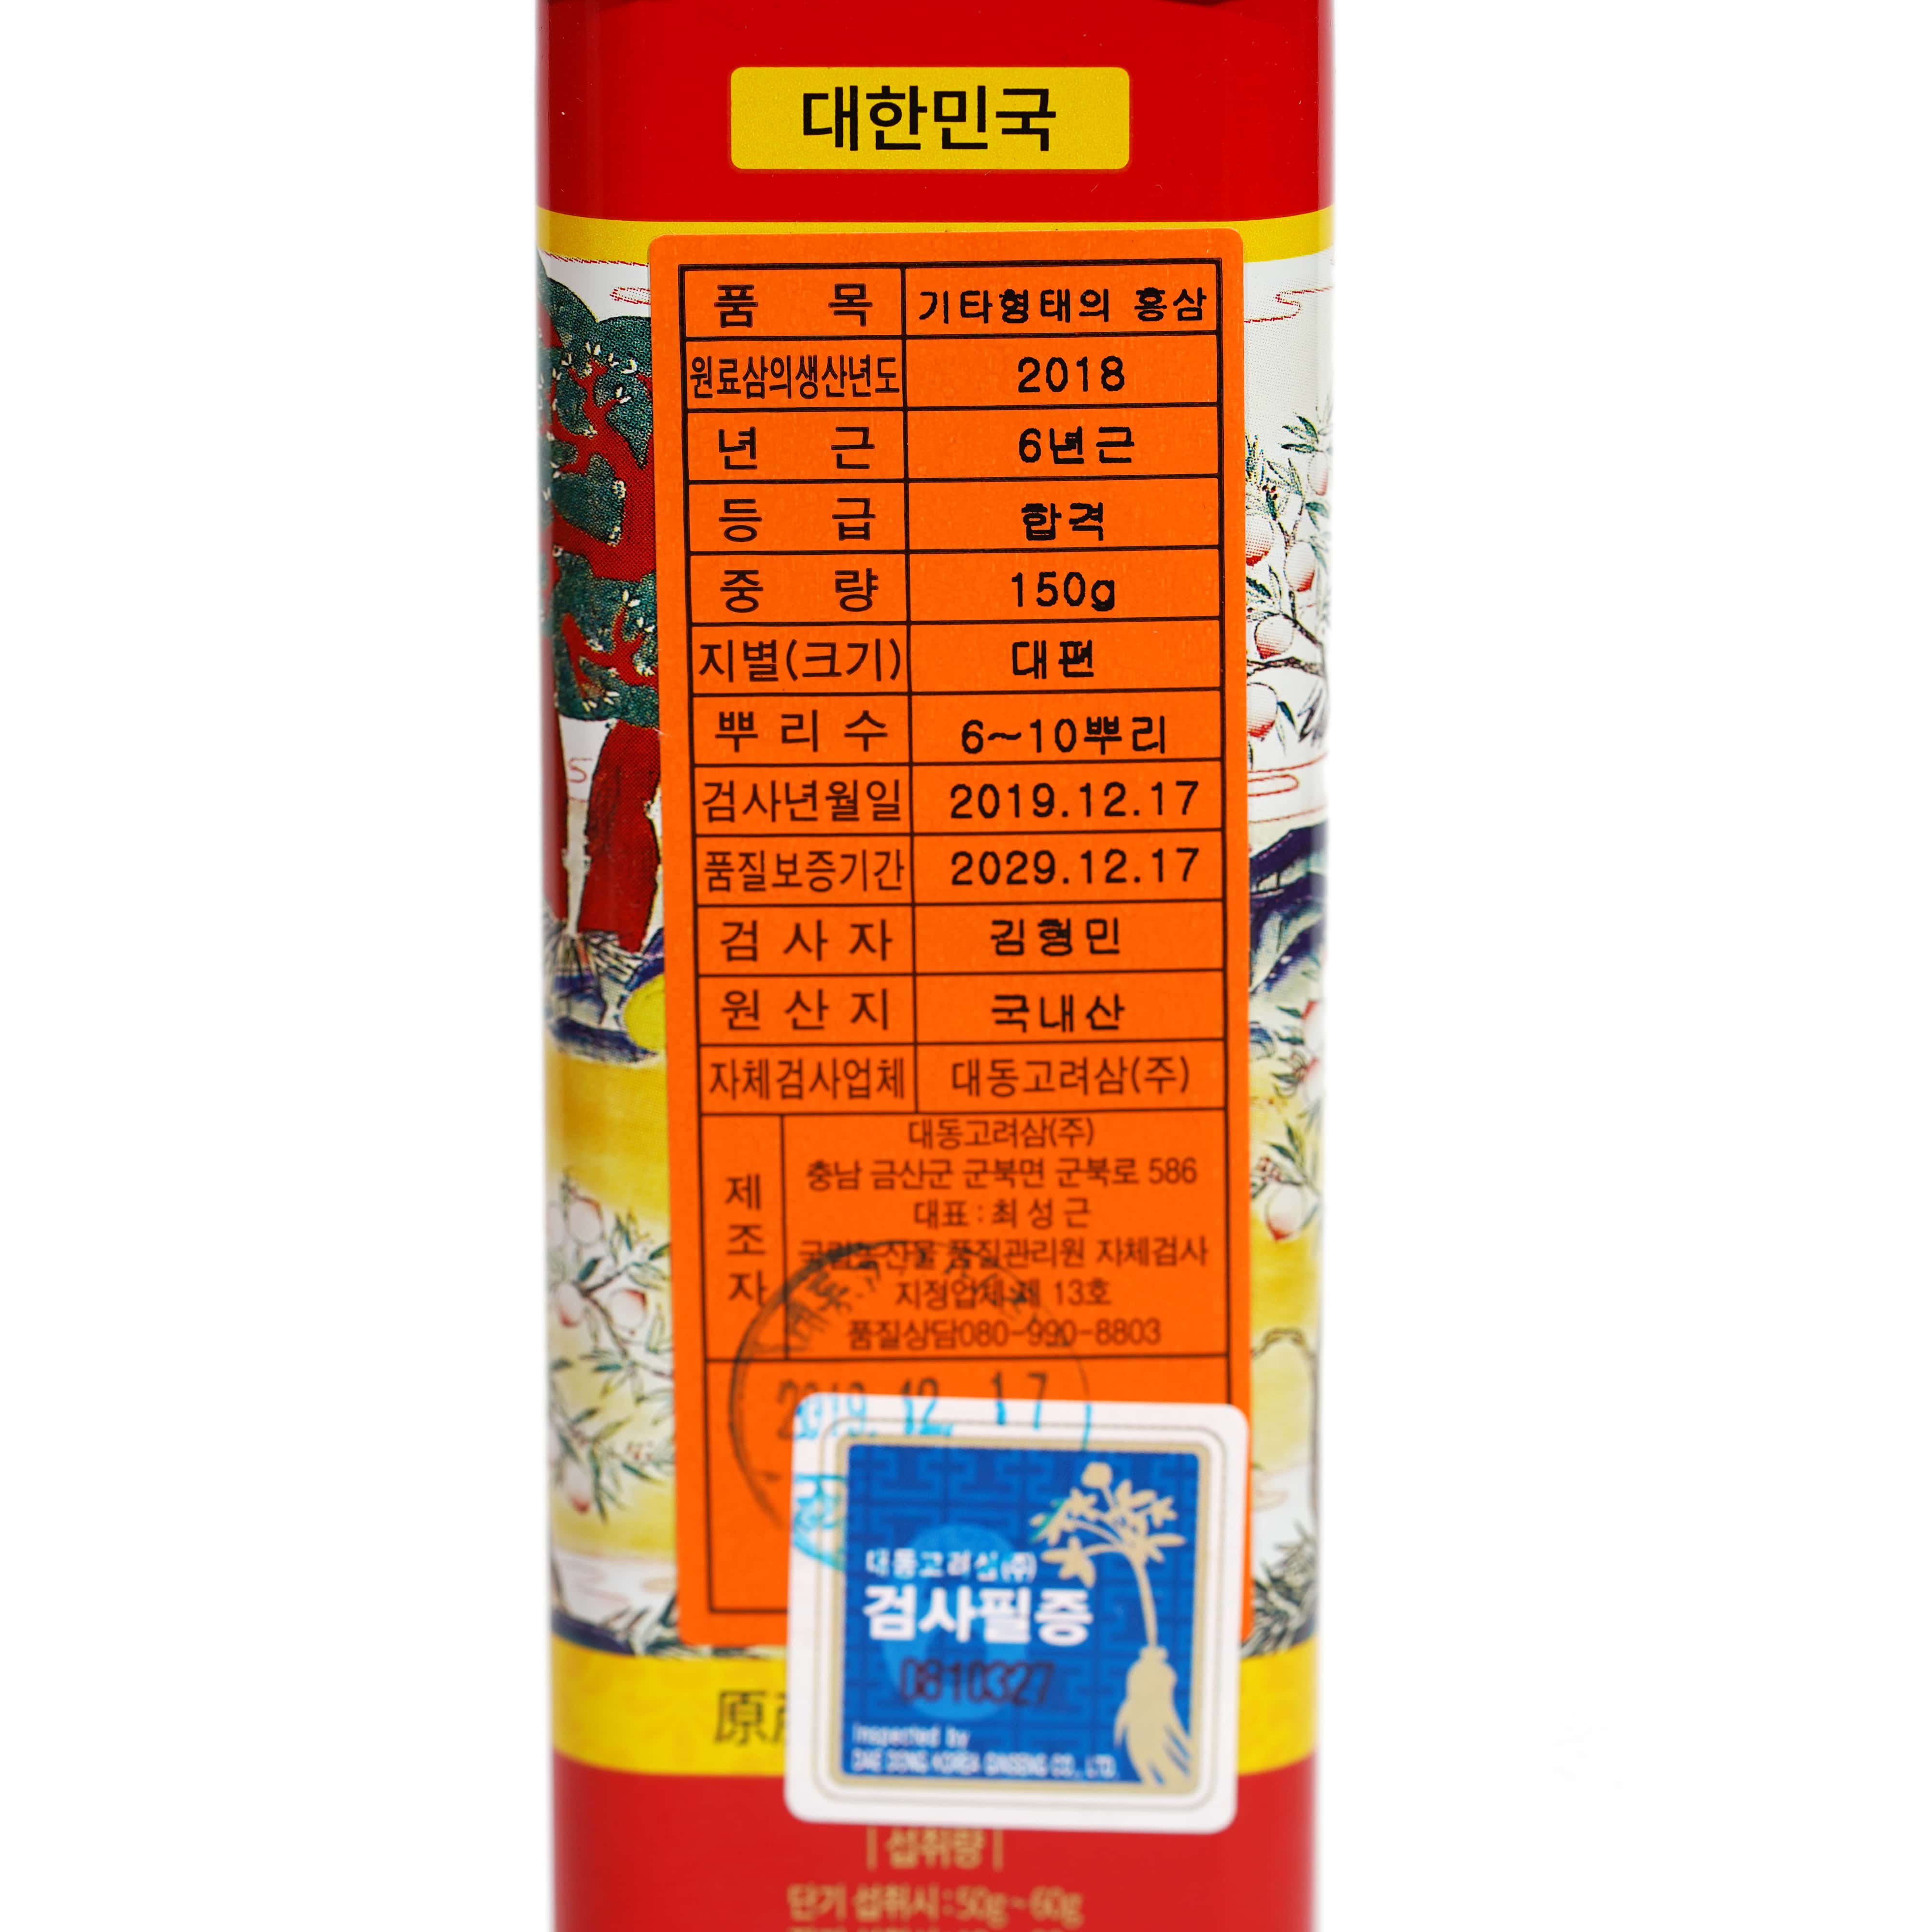 Hồng sâm củ khô Hàn Quốc Daedong Korea Ginseng 150g dòng Premium củ to (6 -10 củ) - Tăng cường trí nhớ, hỗ trợ giảm mỡ máu, phòng ngừa tiểu đường, huyết áp